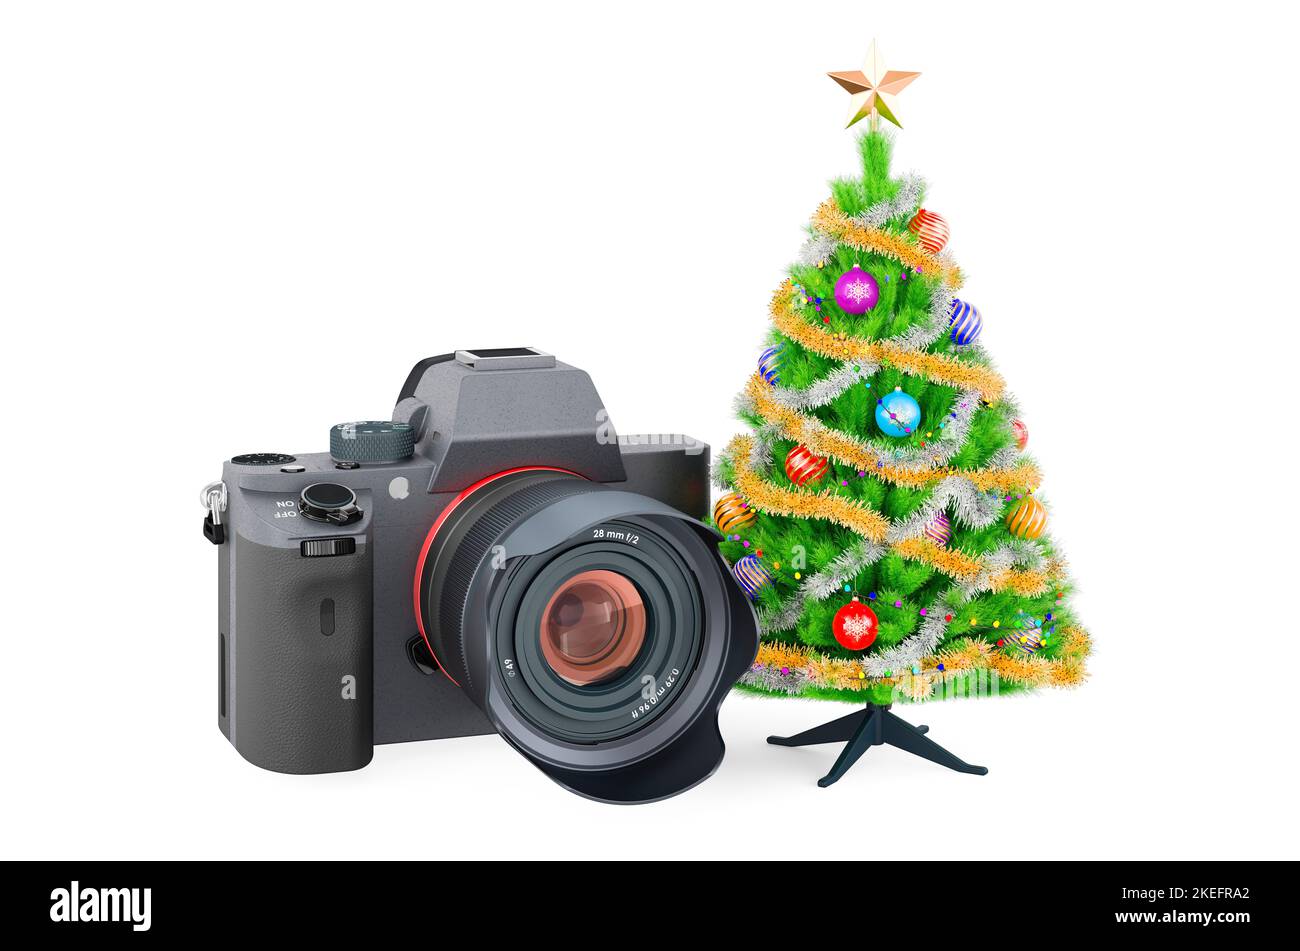 Concetto di sessione fotografica di Natale. Fotocamera digitale con albero di Natale. 3D rendering isolato su sfondo bianco Foto Stock